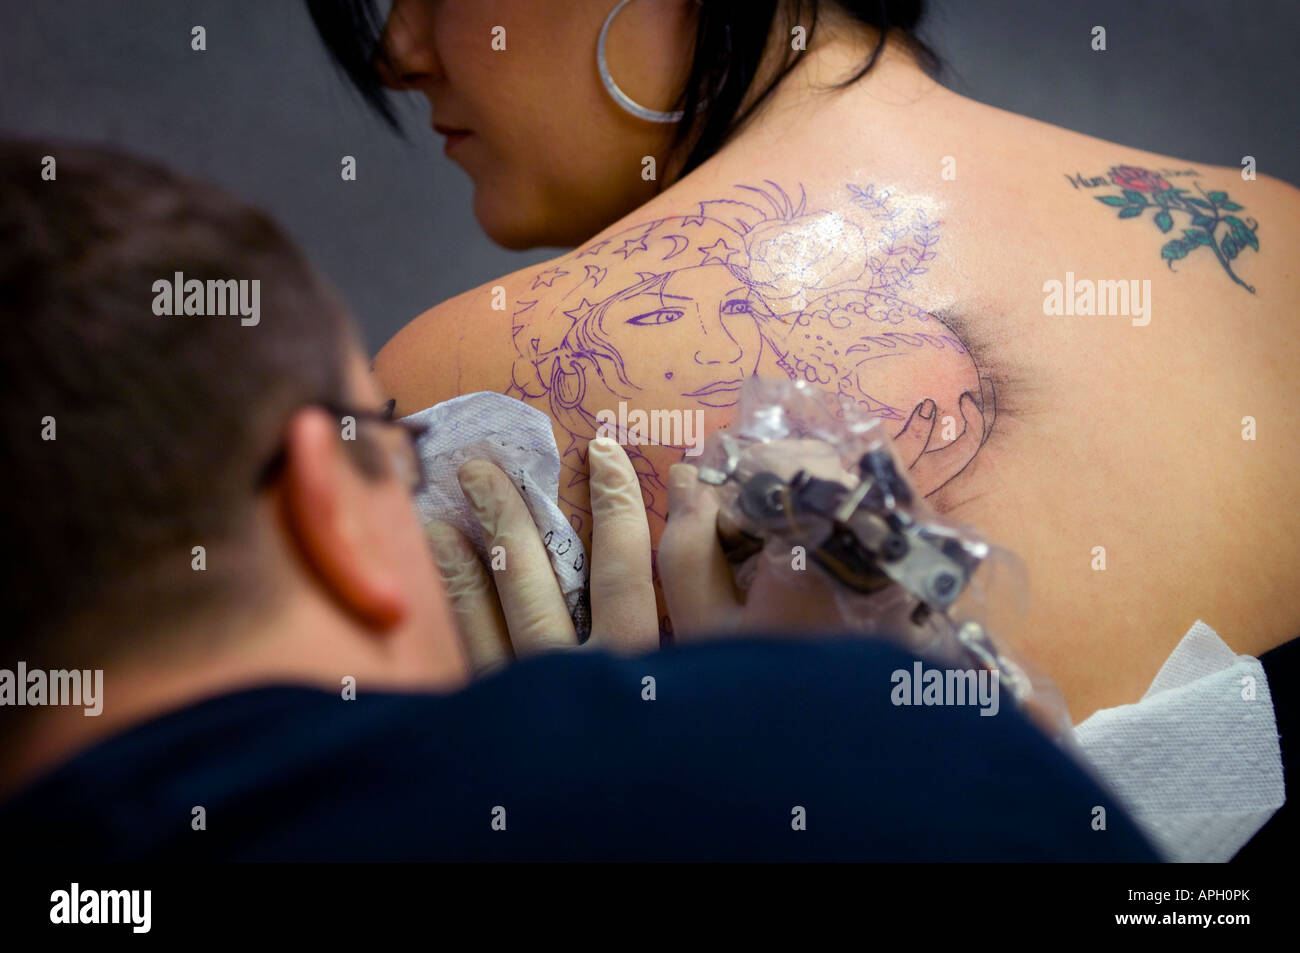 Un tatouage artiste au travail encrant un dessin sur l'épaule d'une femme. Photo de Jim Holden. Banque D'Images